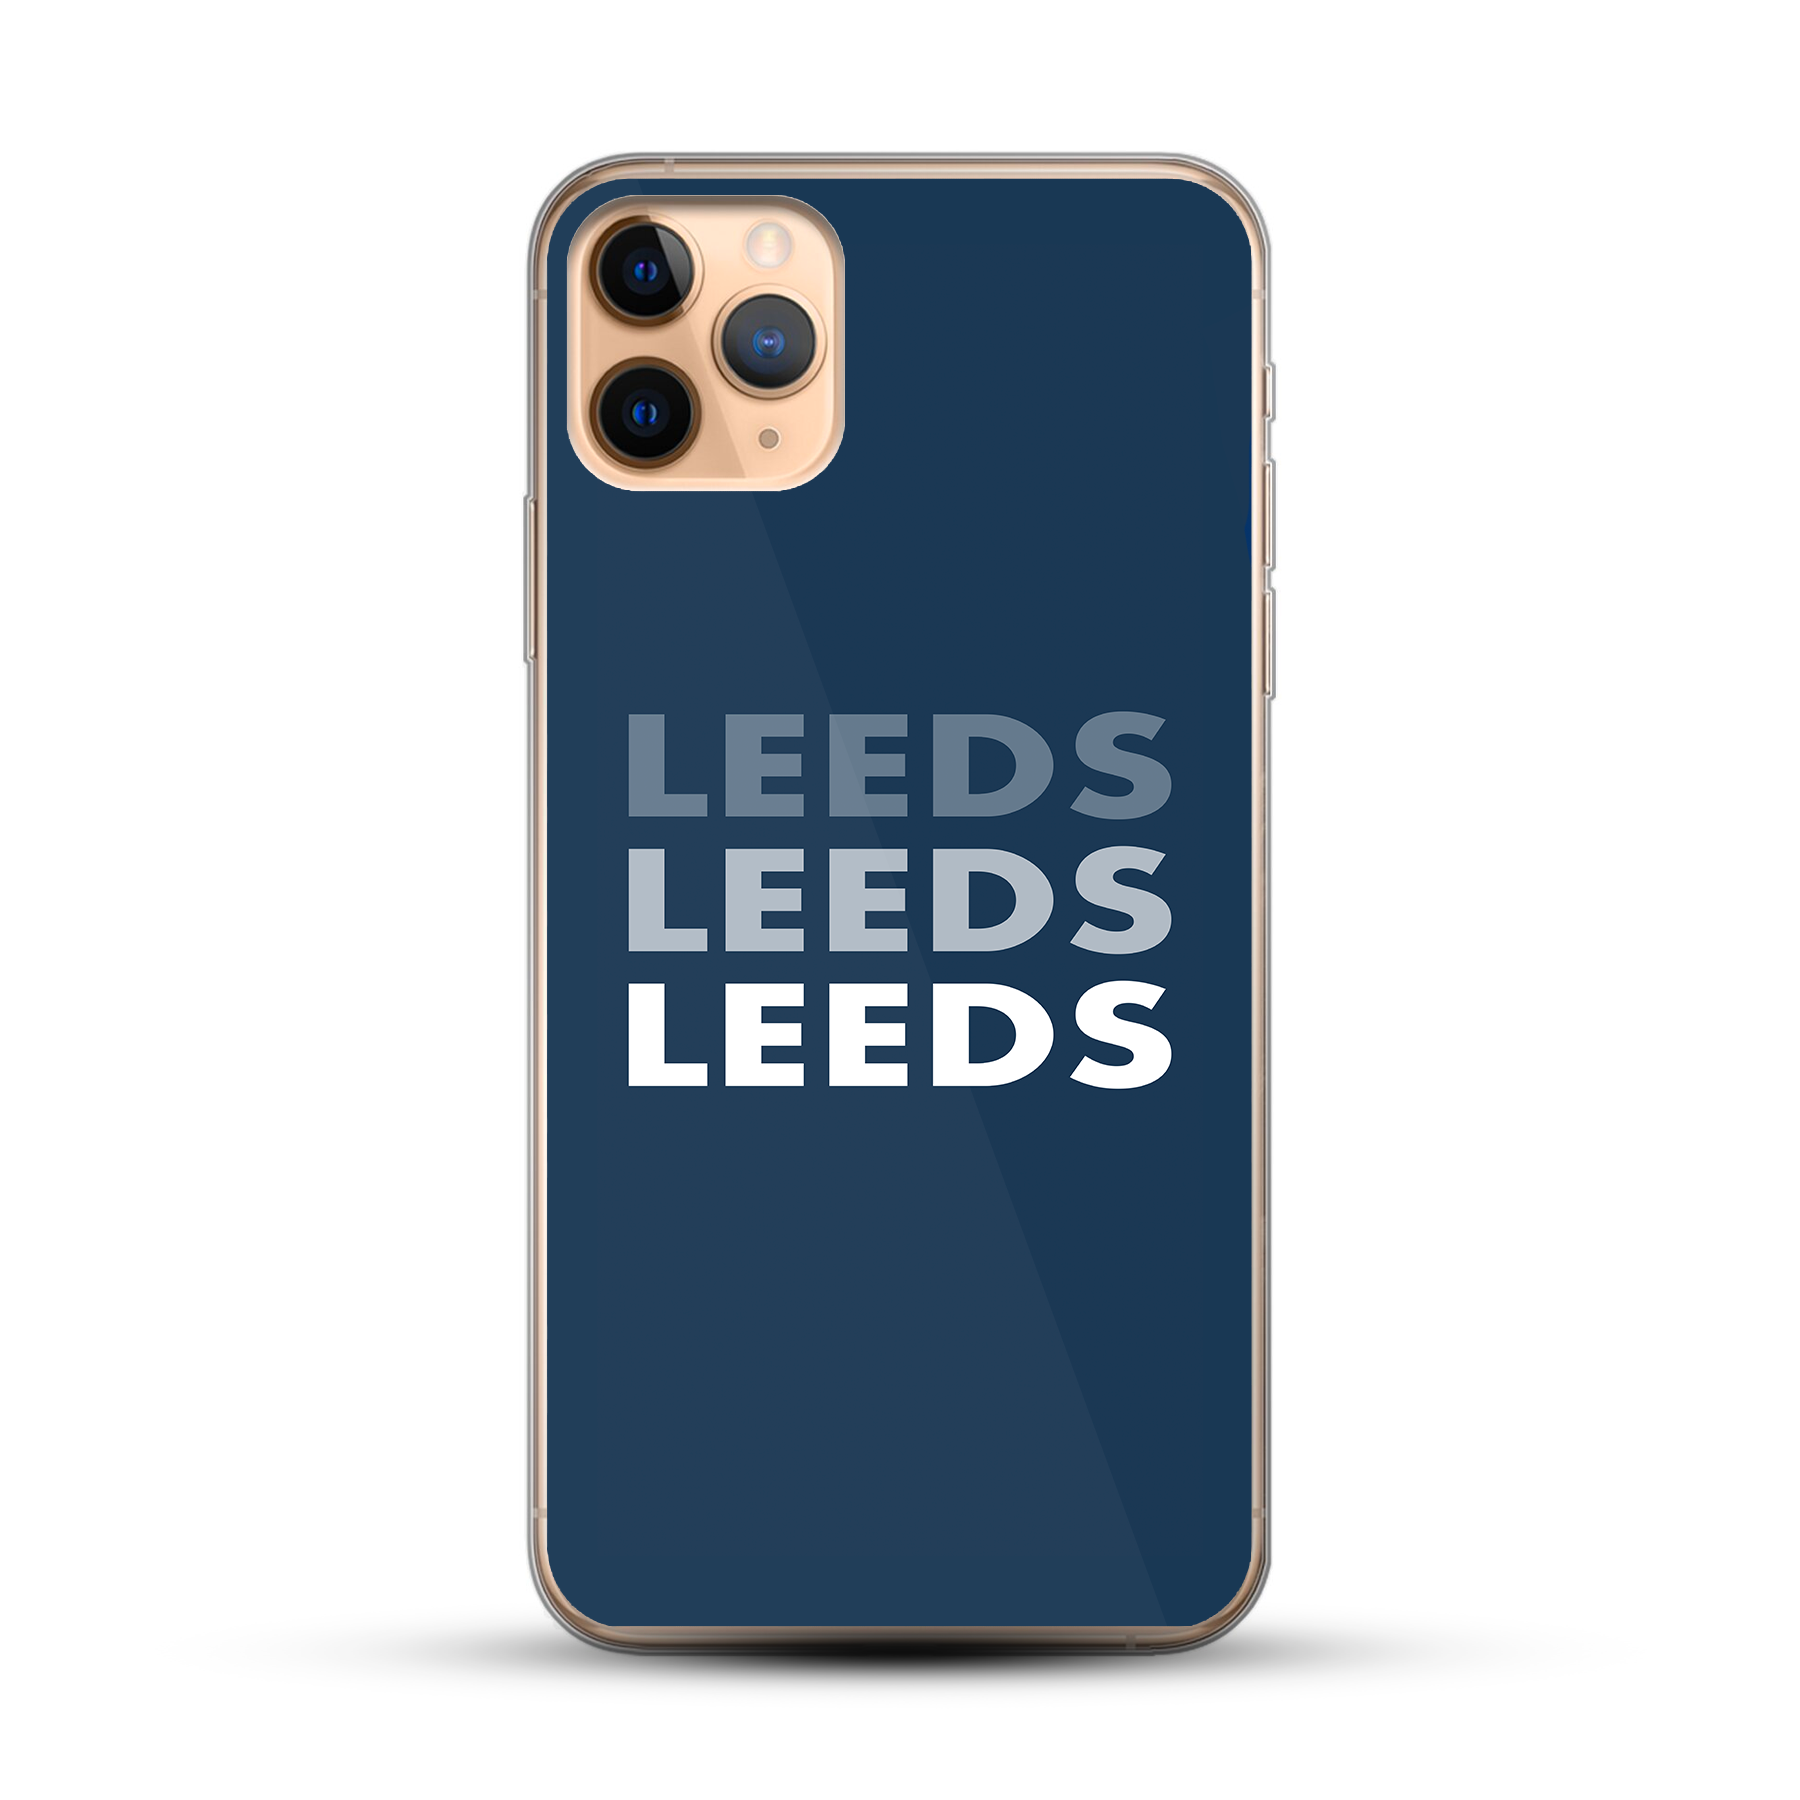 Leeds Leeds Leeds // Leeds United Phone Case